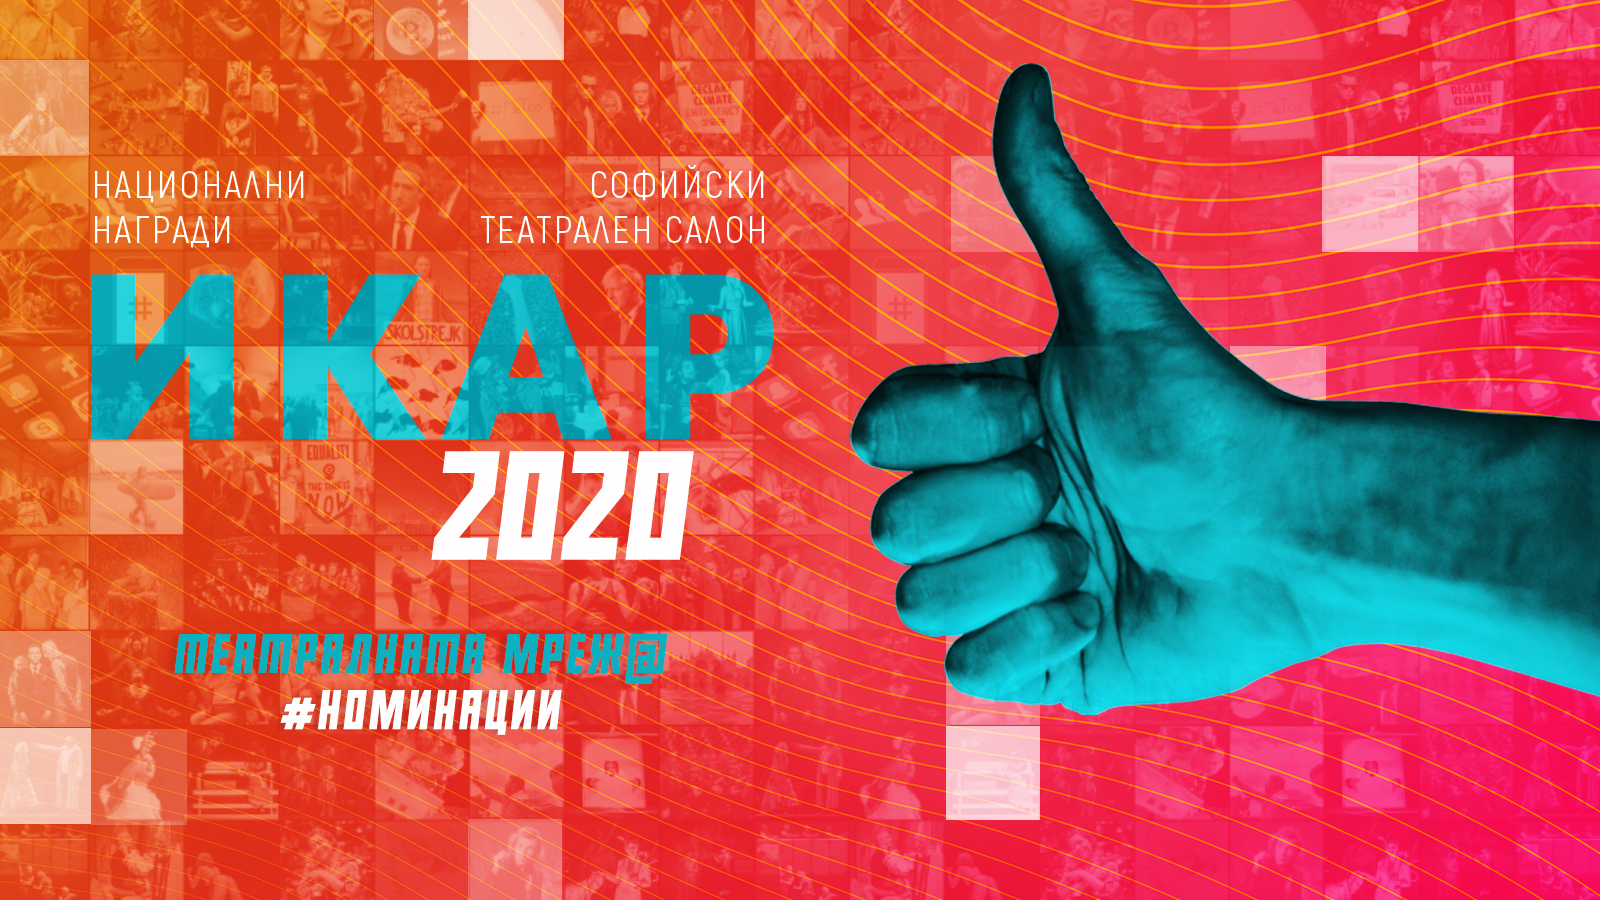 Александър Хаджиангелов и Момчил Степанов са номинирани за национални награди ИКАР 2020